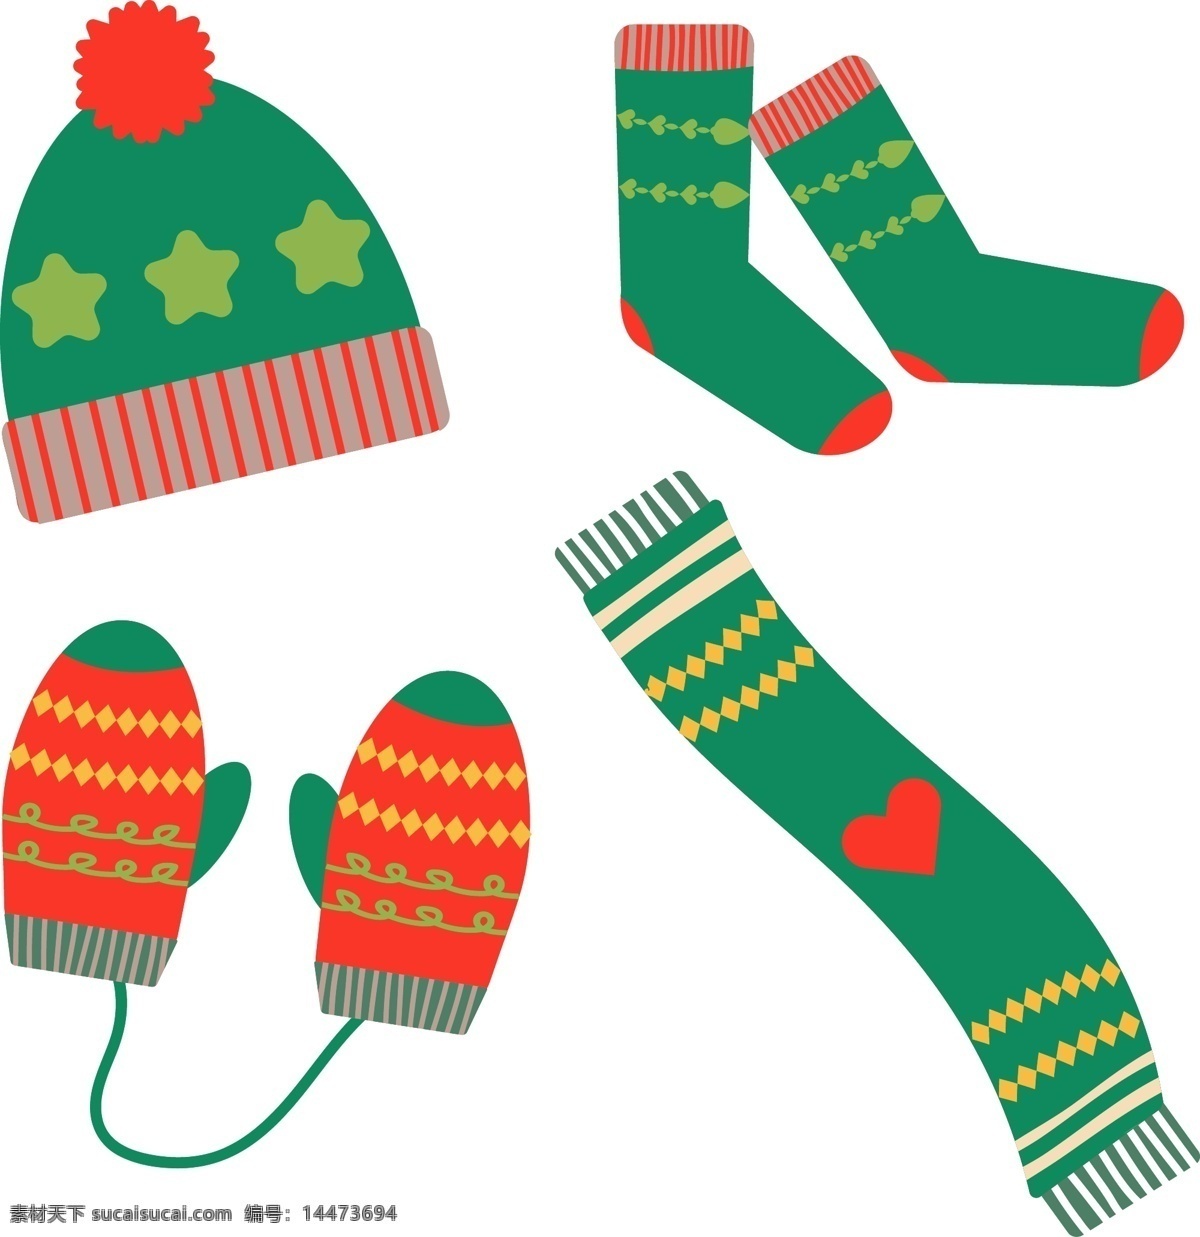 种 隔热材料 插图 冬天 开襟 羊毛衫 可爱 帽子 温暖 技巧 服装 袜子 材料 如果 留意